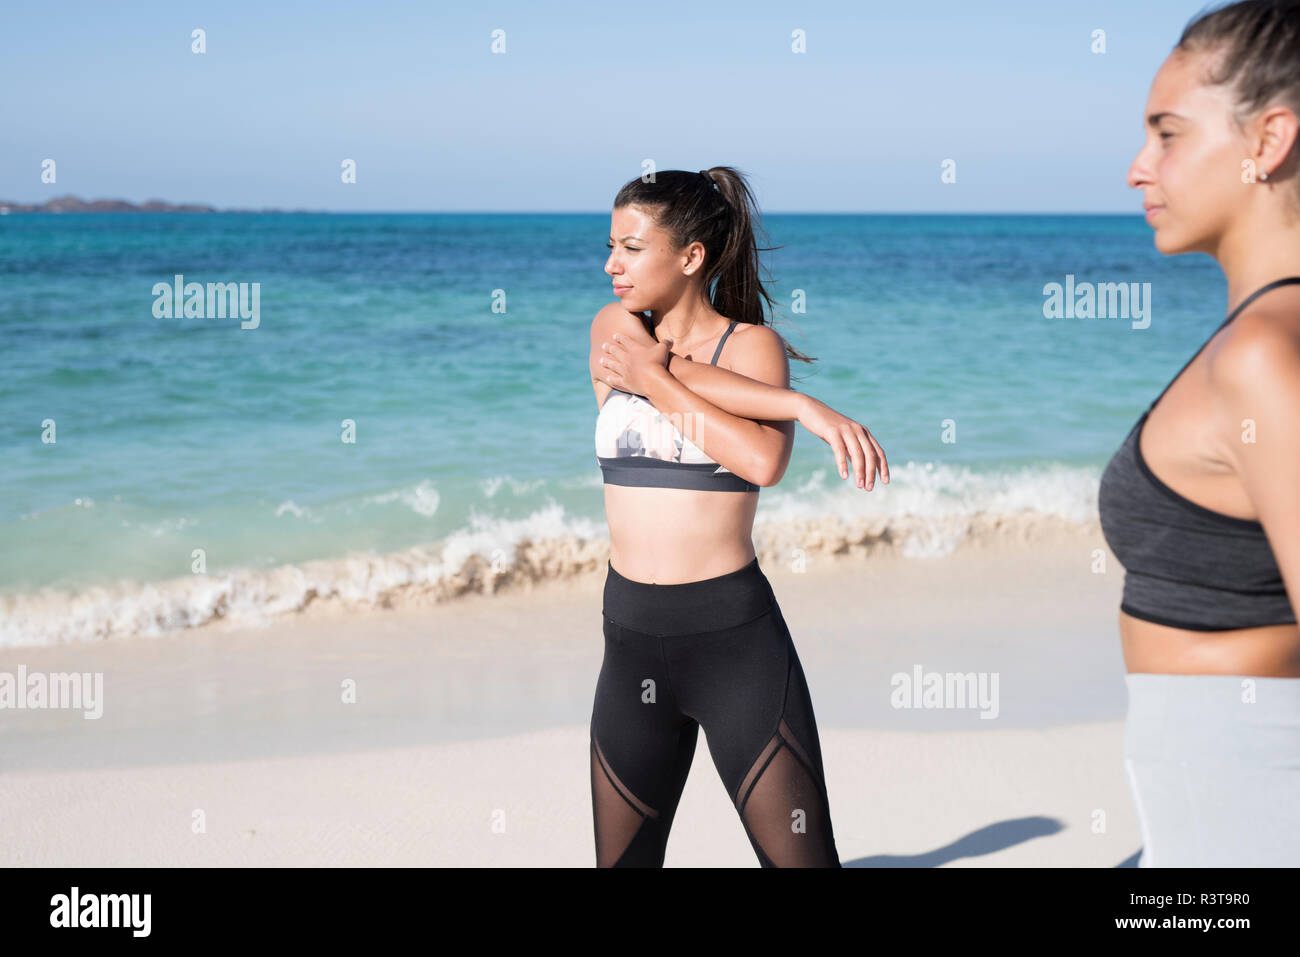 Spanien, Kanarische Inseln, Fuerteventura, zwei junge Frauen trainieren am Strand Stockfoto